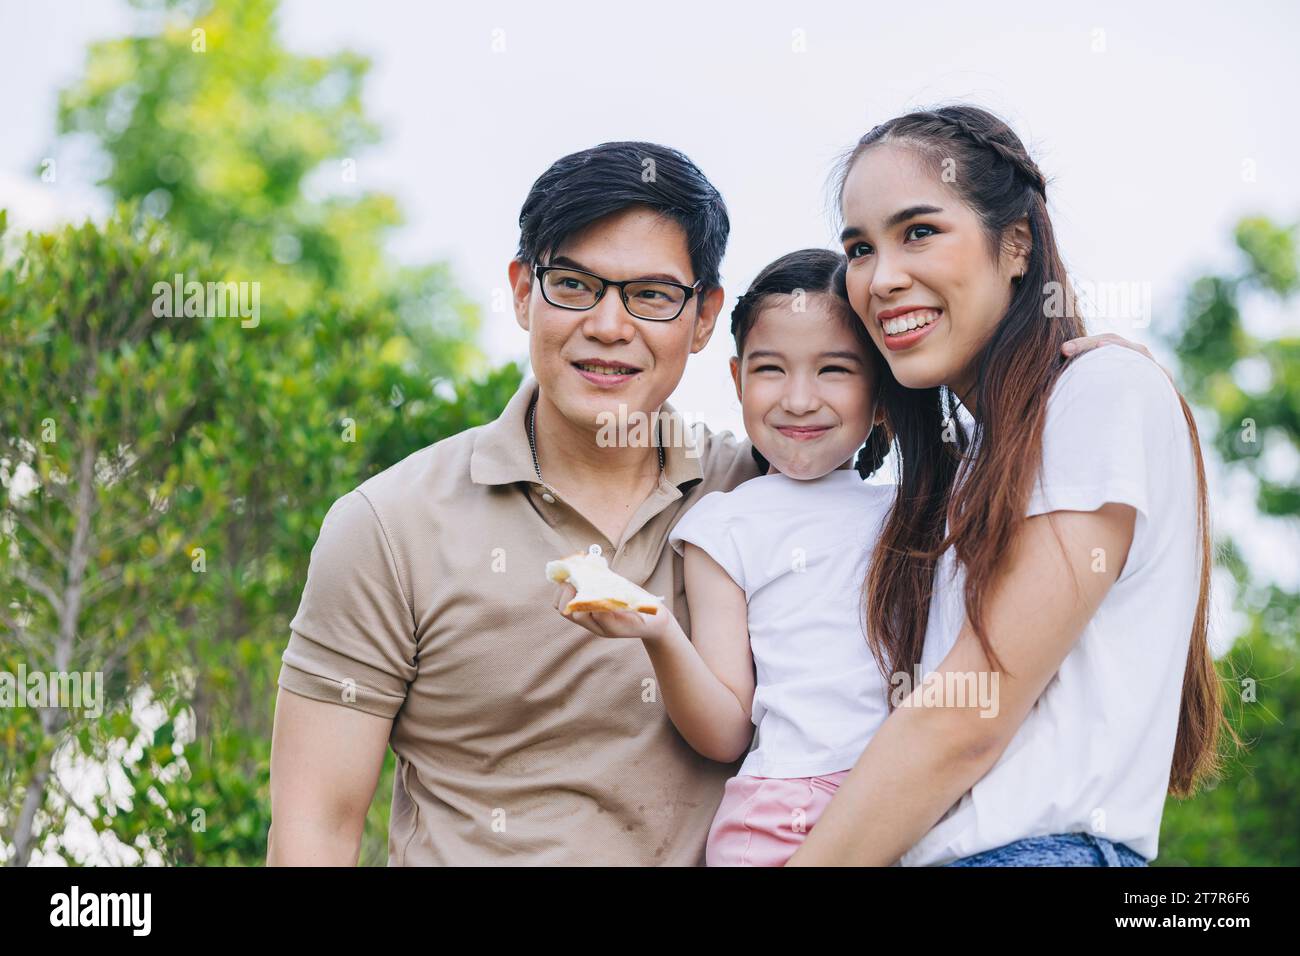 Glücklich lächelnde junge asiatische Familie Glück mit Kind, kleines Mädchen, das zusammen im grünen Park steht Stockfoto